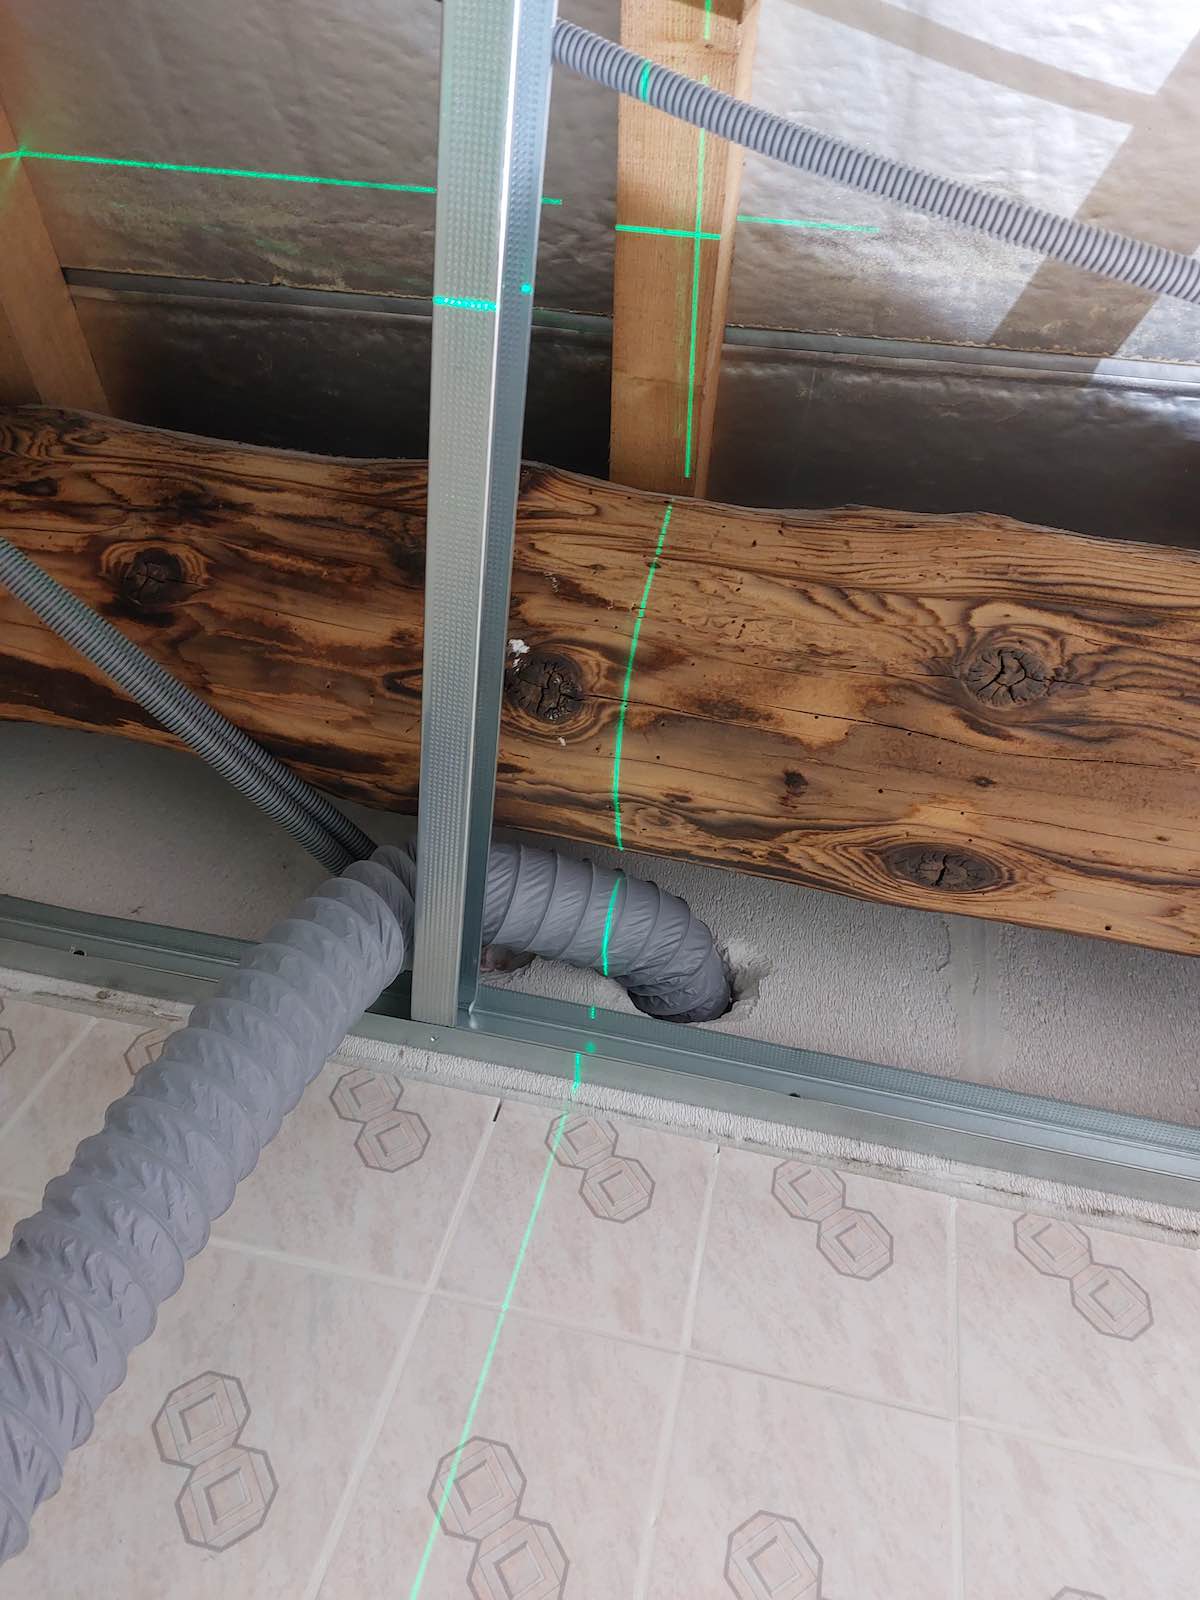 comment installer des spots en plafond placo?